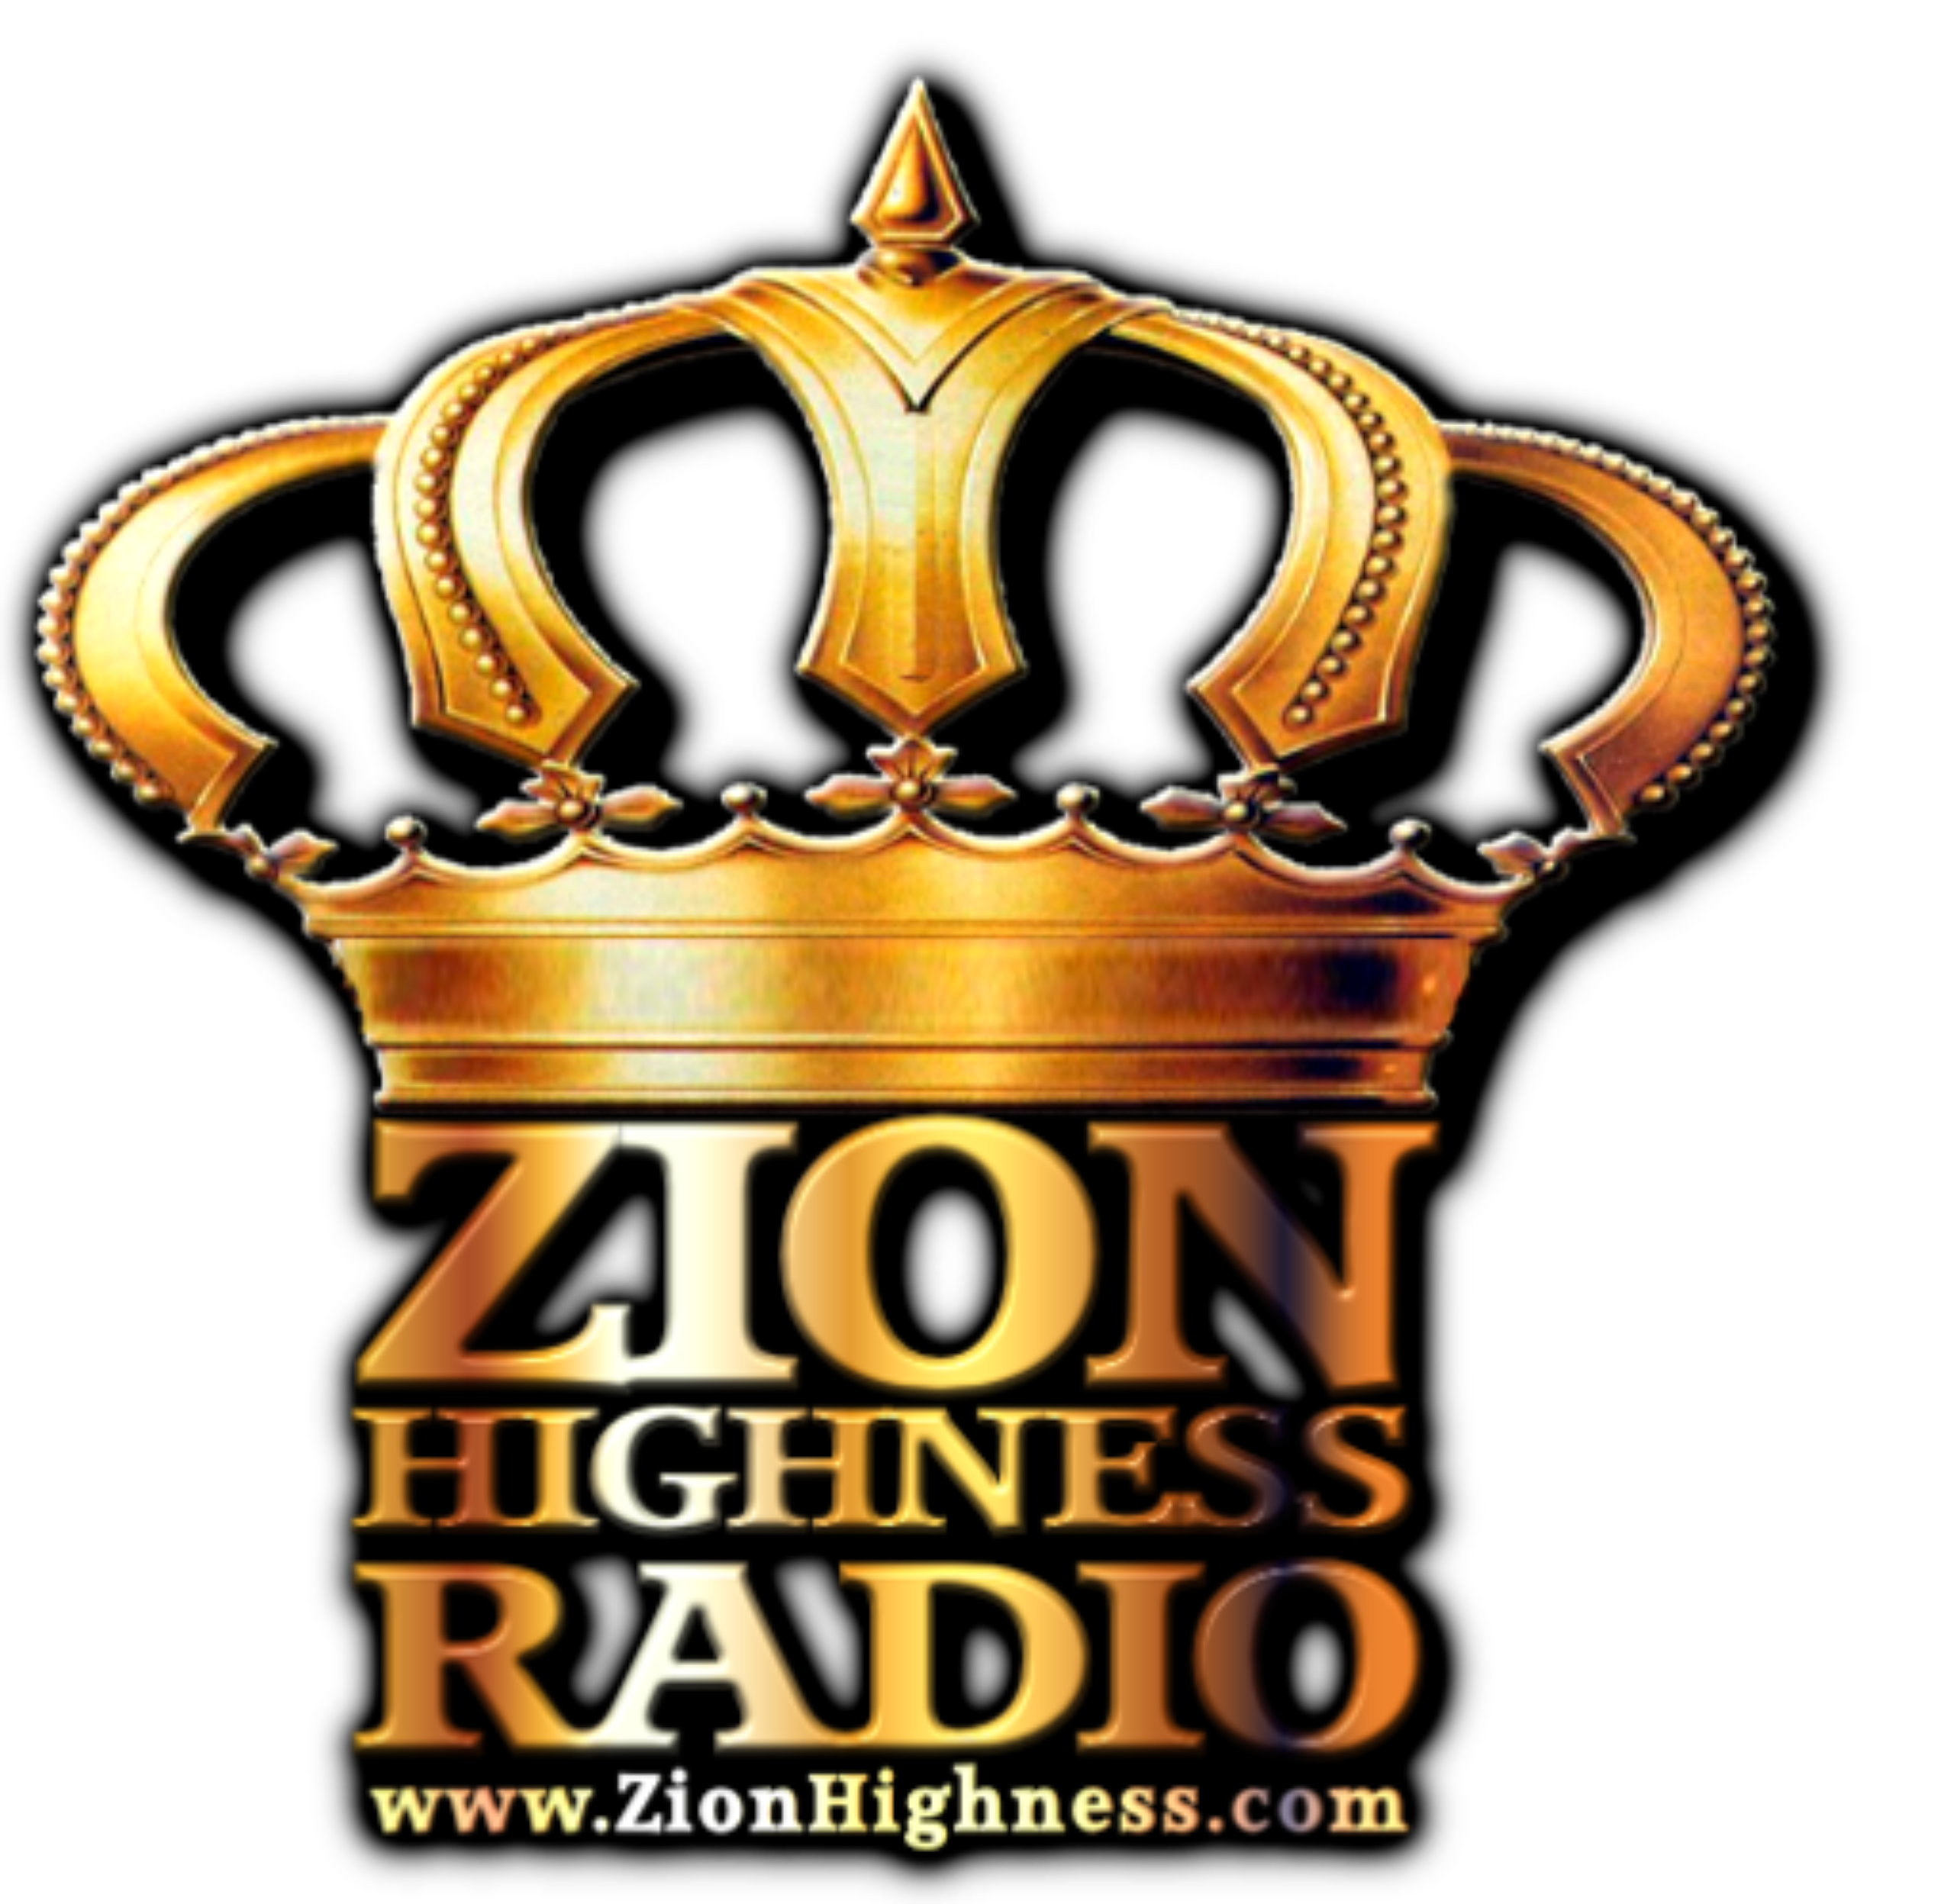 cropped-zionhighness-radio_logo-URLsml1-4.png – ZIONHIGHNESS RADIO